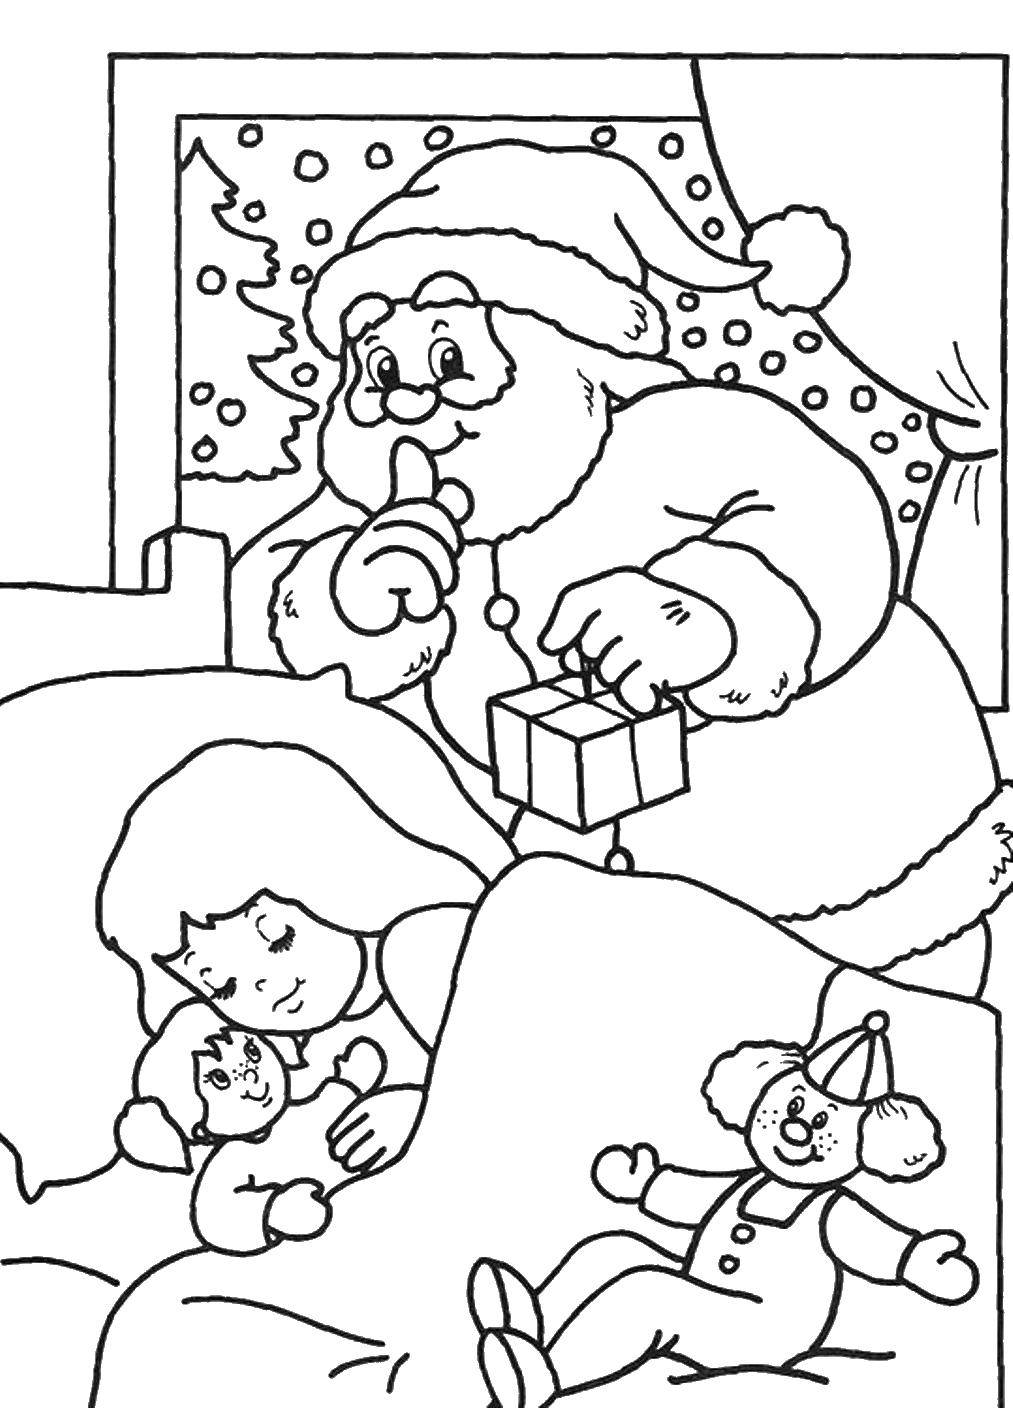 Название: Раскраска Санта клаус принес подарки. Категория: рождество. Теги: Санта Клаус, рождество.